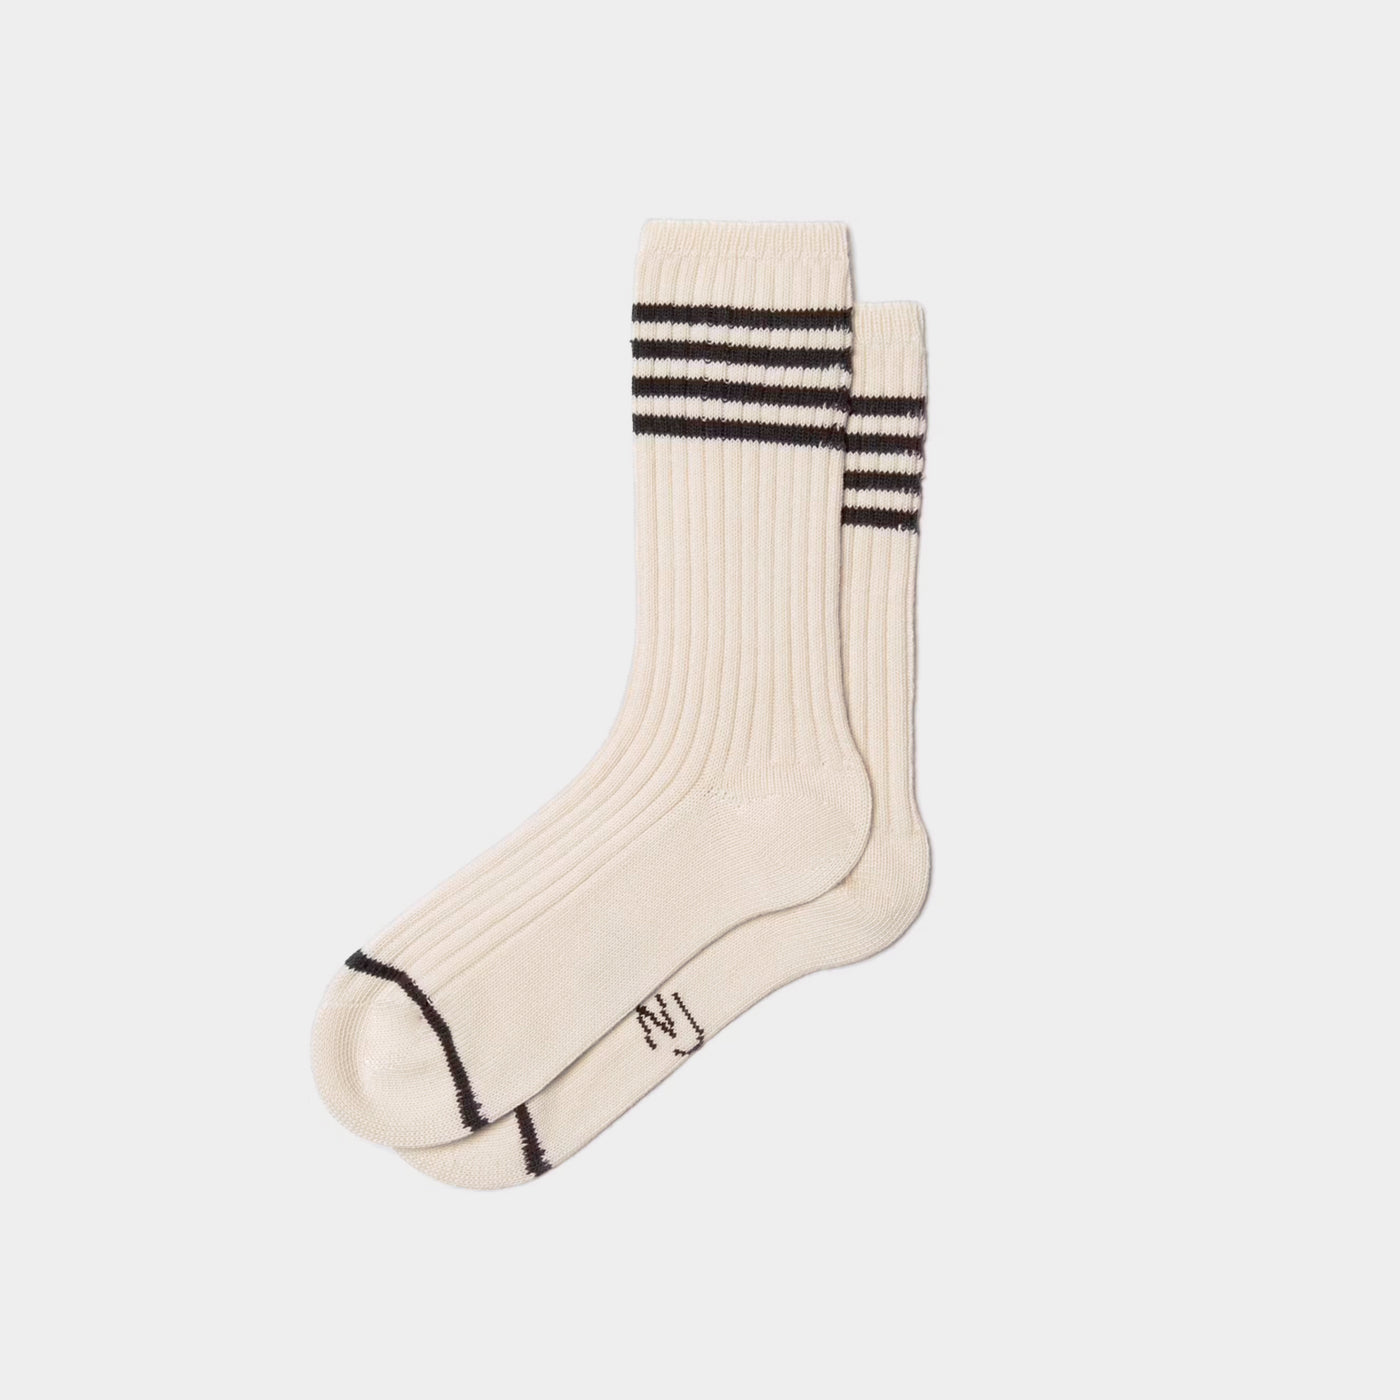 Nudie - Mens Stripe Tennis Socks - Off-White / Black